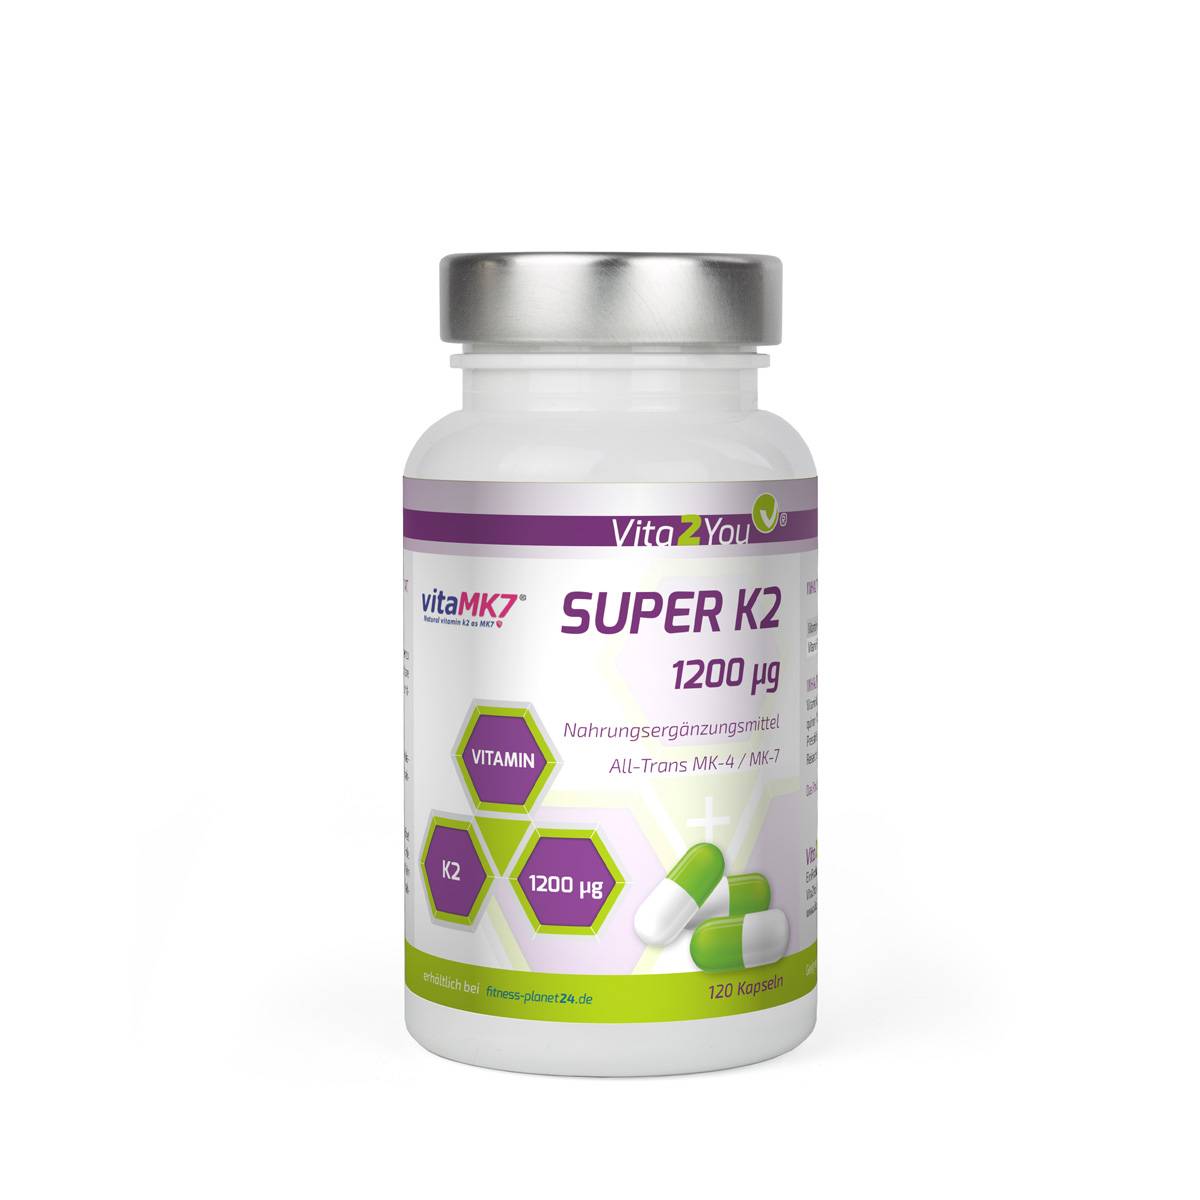 G g vitamins. Vita Premium Vitamin d3. K2 витамин 100 мг. Vita k2 (Eurocaps Ltd). Витамины MK.